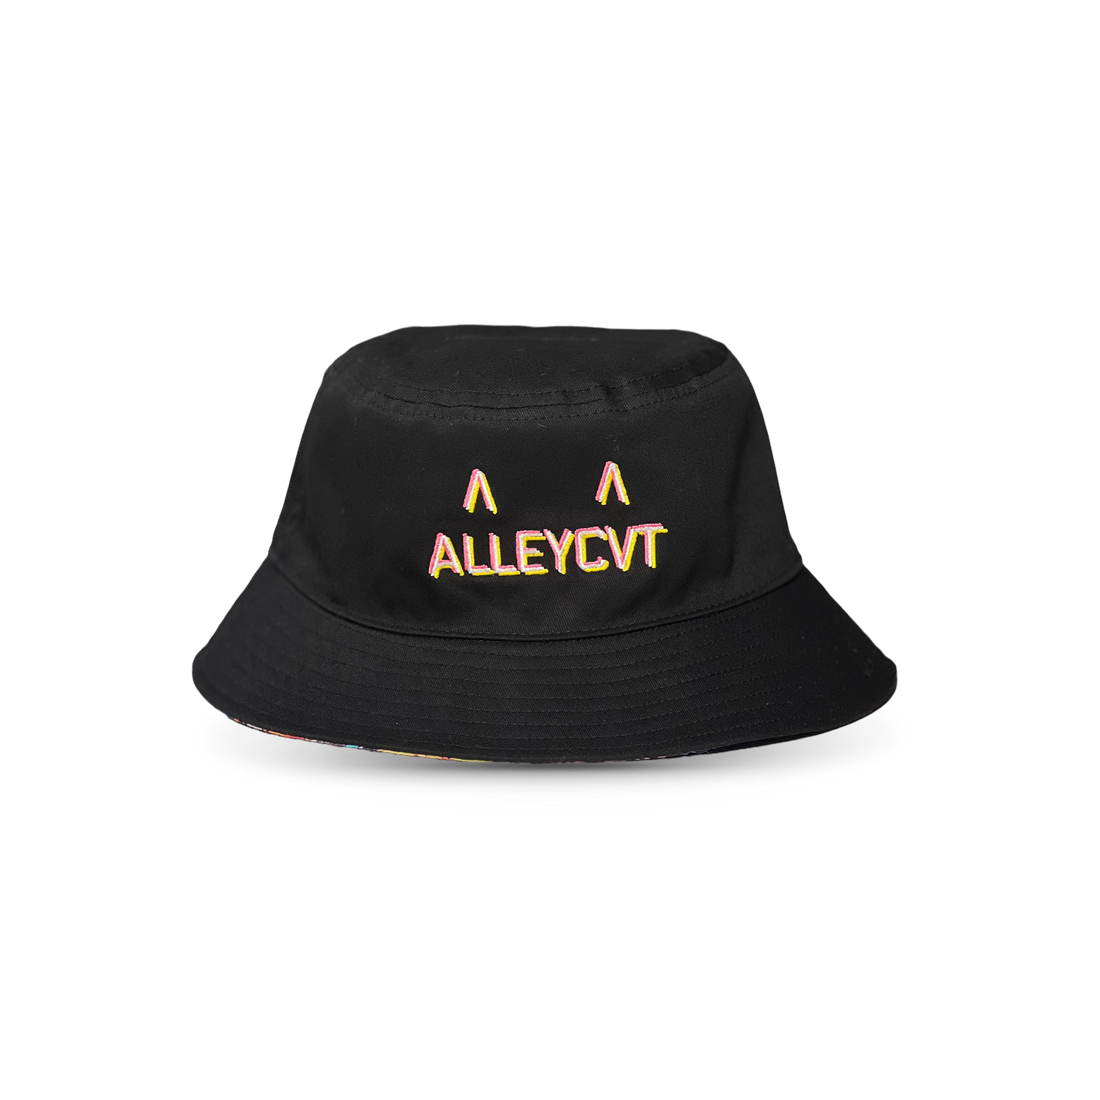 ALLEYCVT - Planet Supersonic Reversible Bucket Hat